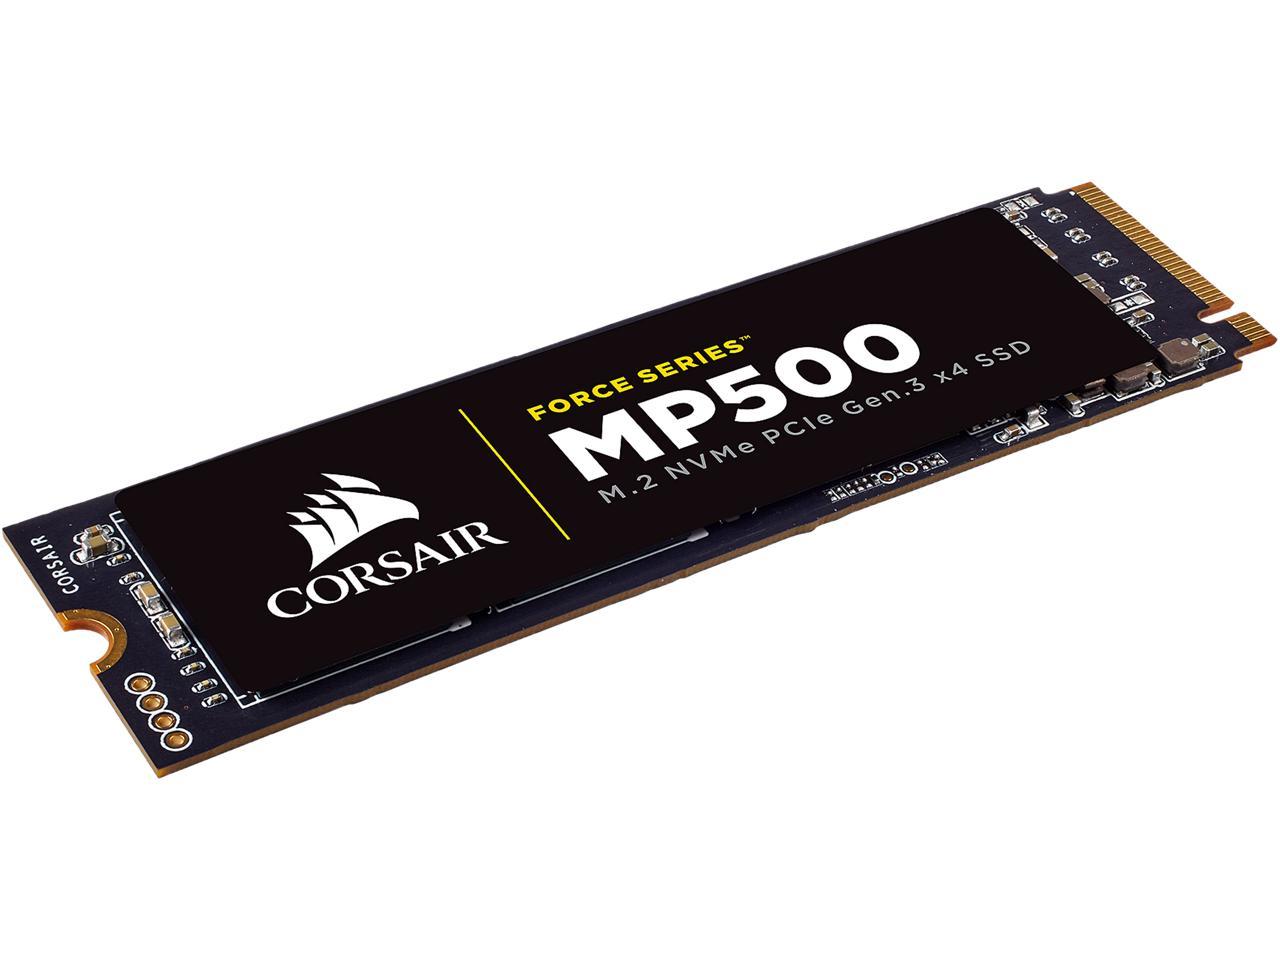 Corsair MP500 M.2 2280 240GB PCI-Express 3.0 x4 MLC Internal Solid State Drive (SSD) CSSD-F240GBMP500 SSDs Newegg.com